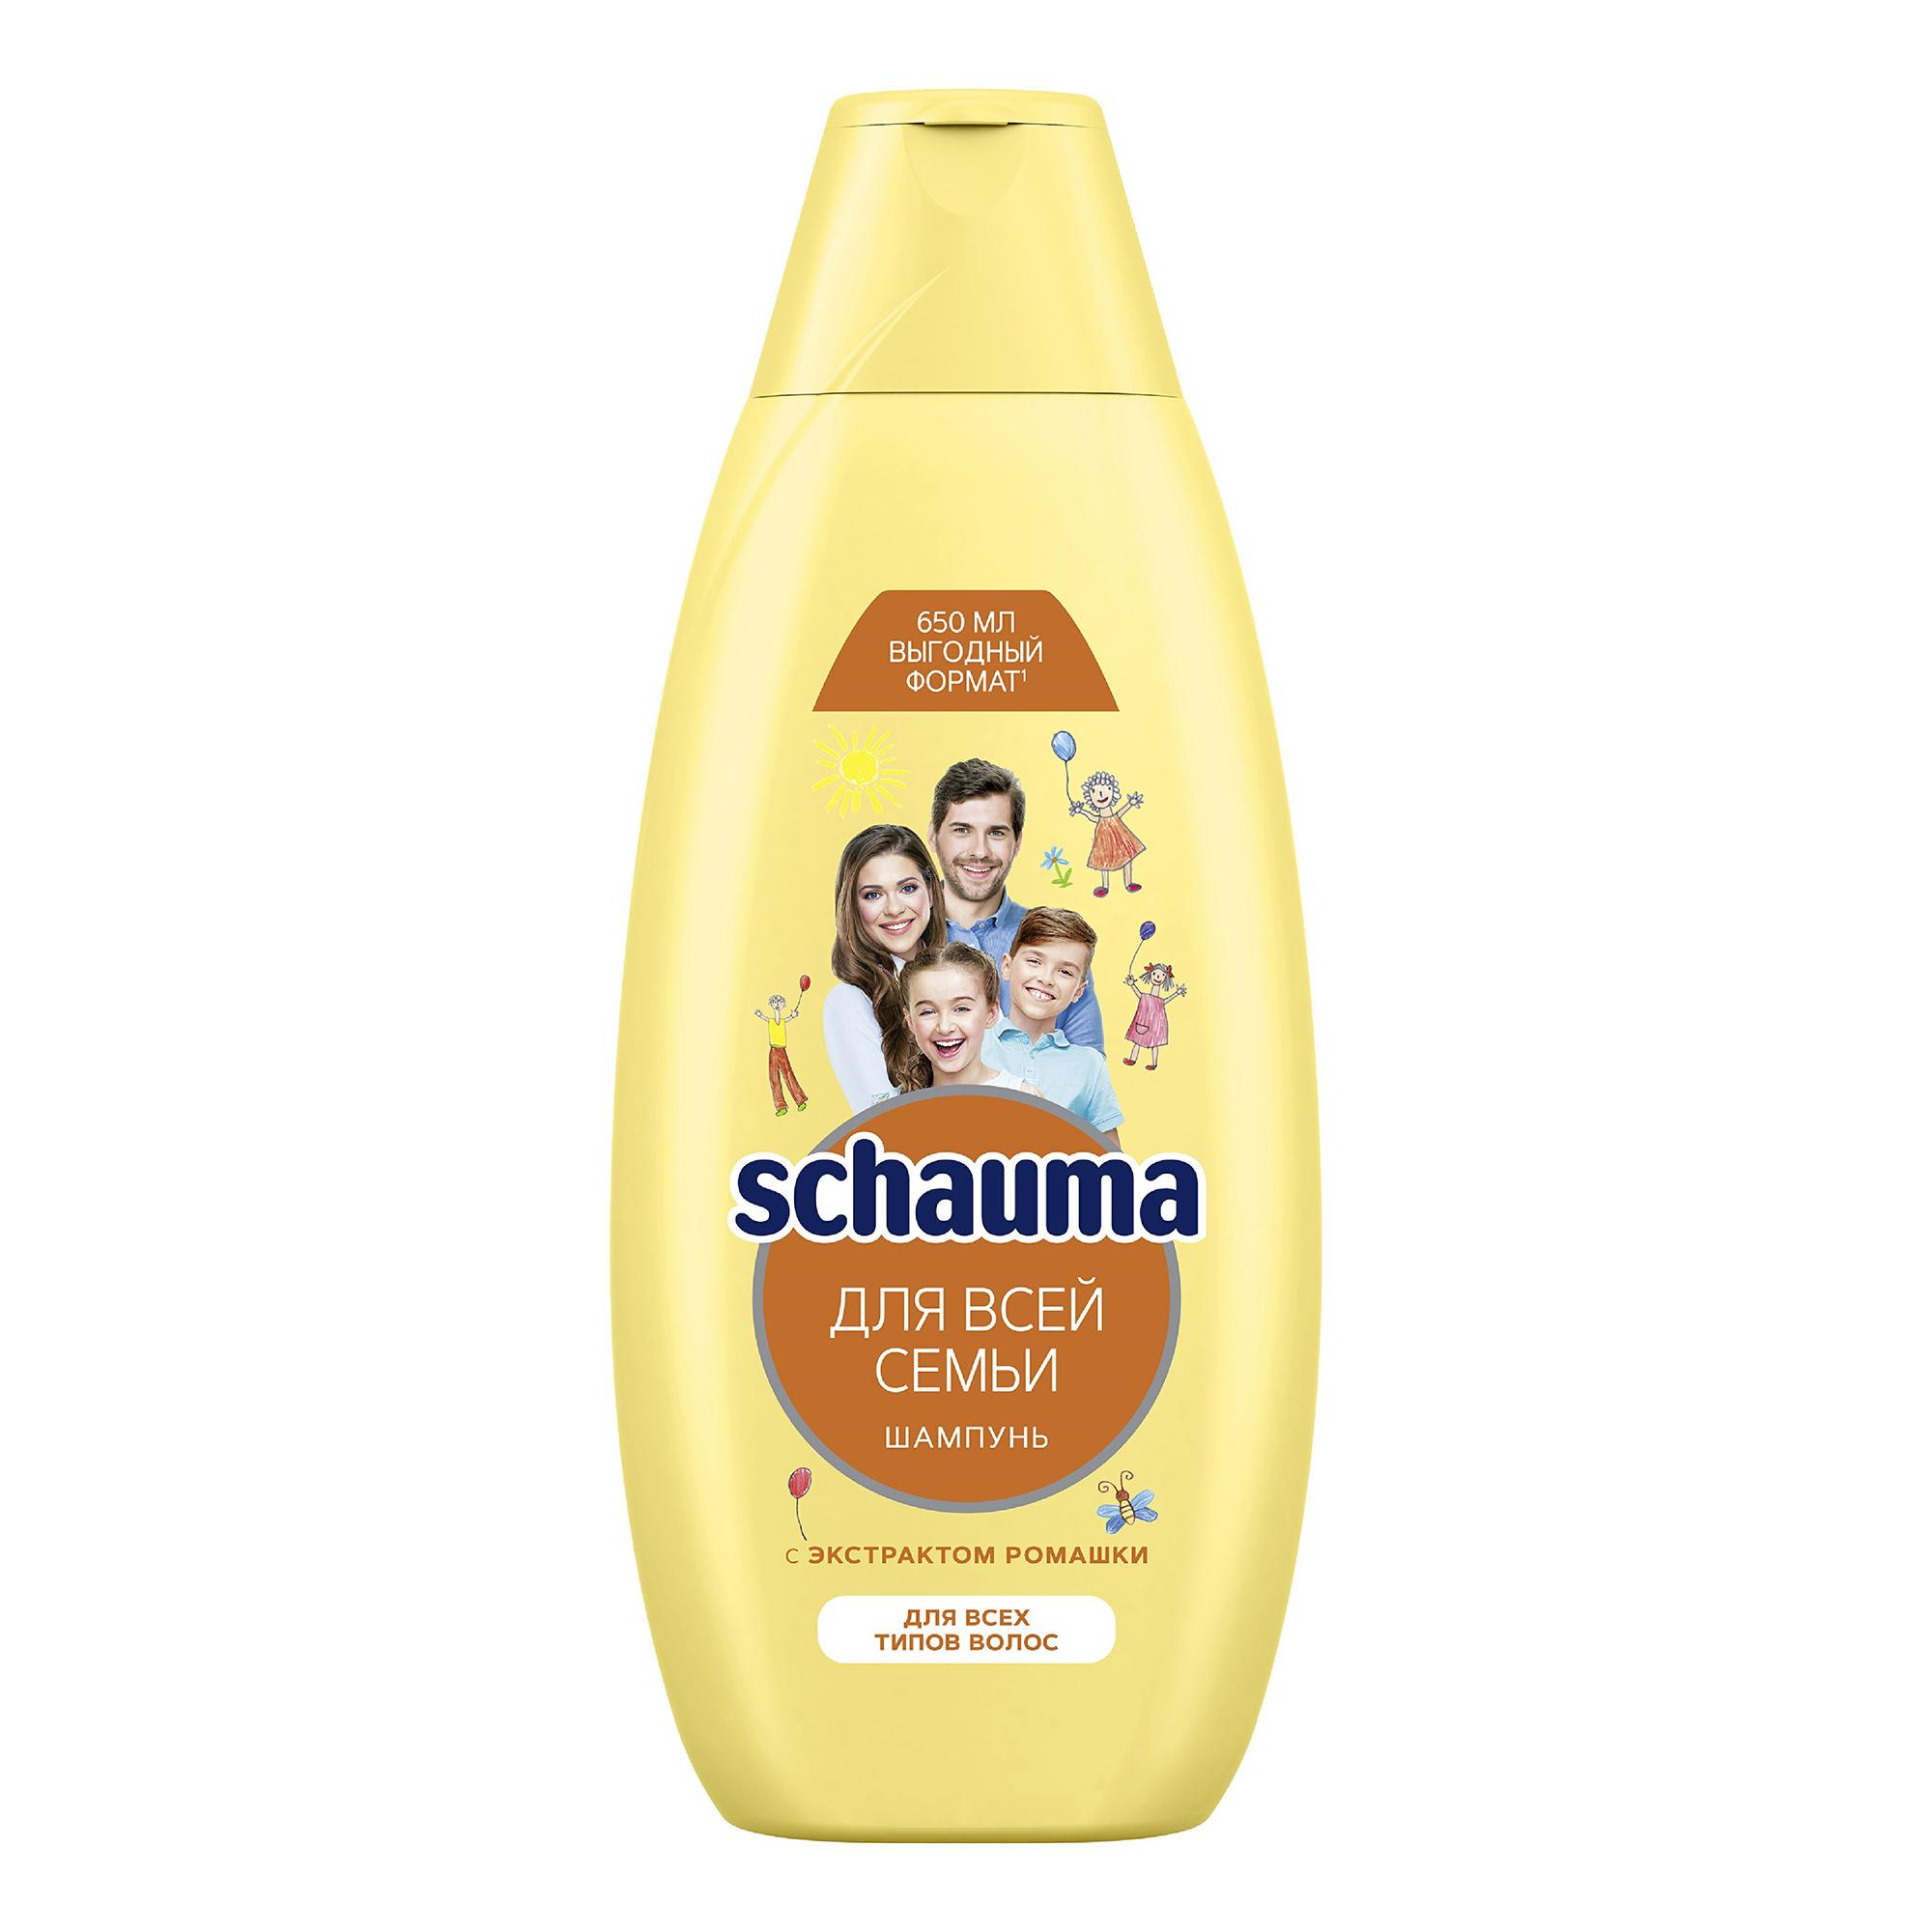 Шампунь Schauma для всей семьи с экстрактом ромашки для всех типов волос, 650 мл., ПЭТ